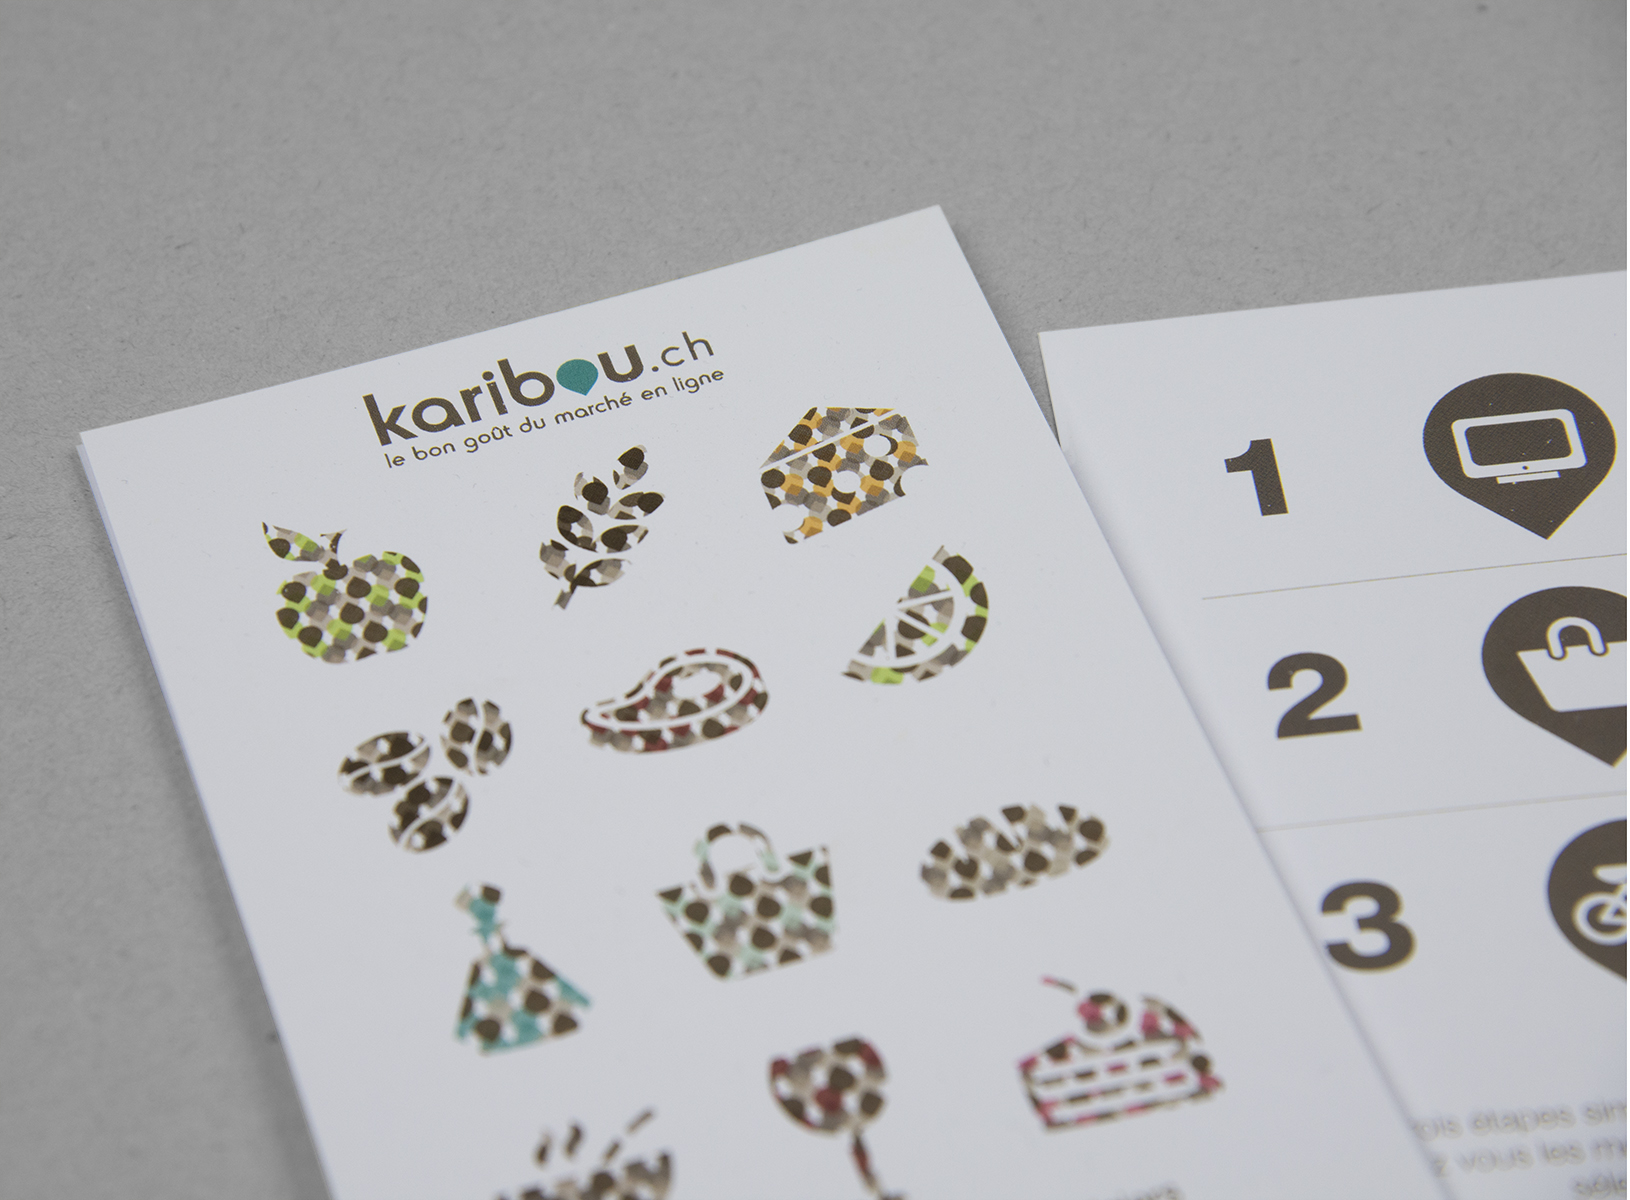 kaibou.ch, flyers a5, identité visuelle, graphic design, création chloé genet, chloegenet.ch